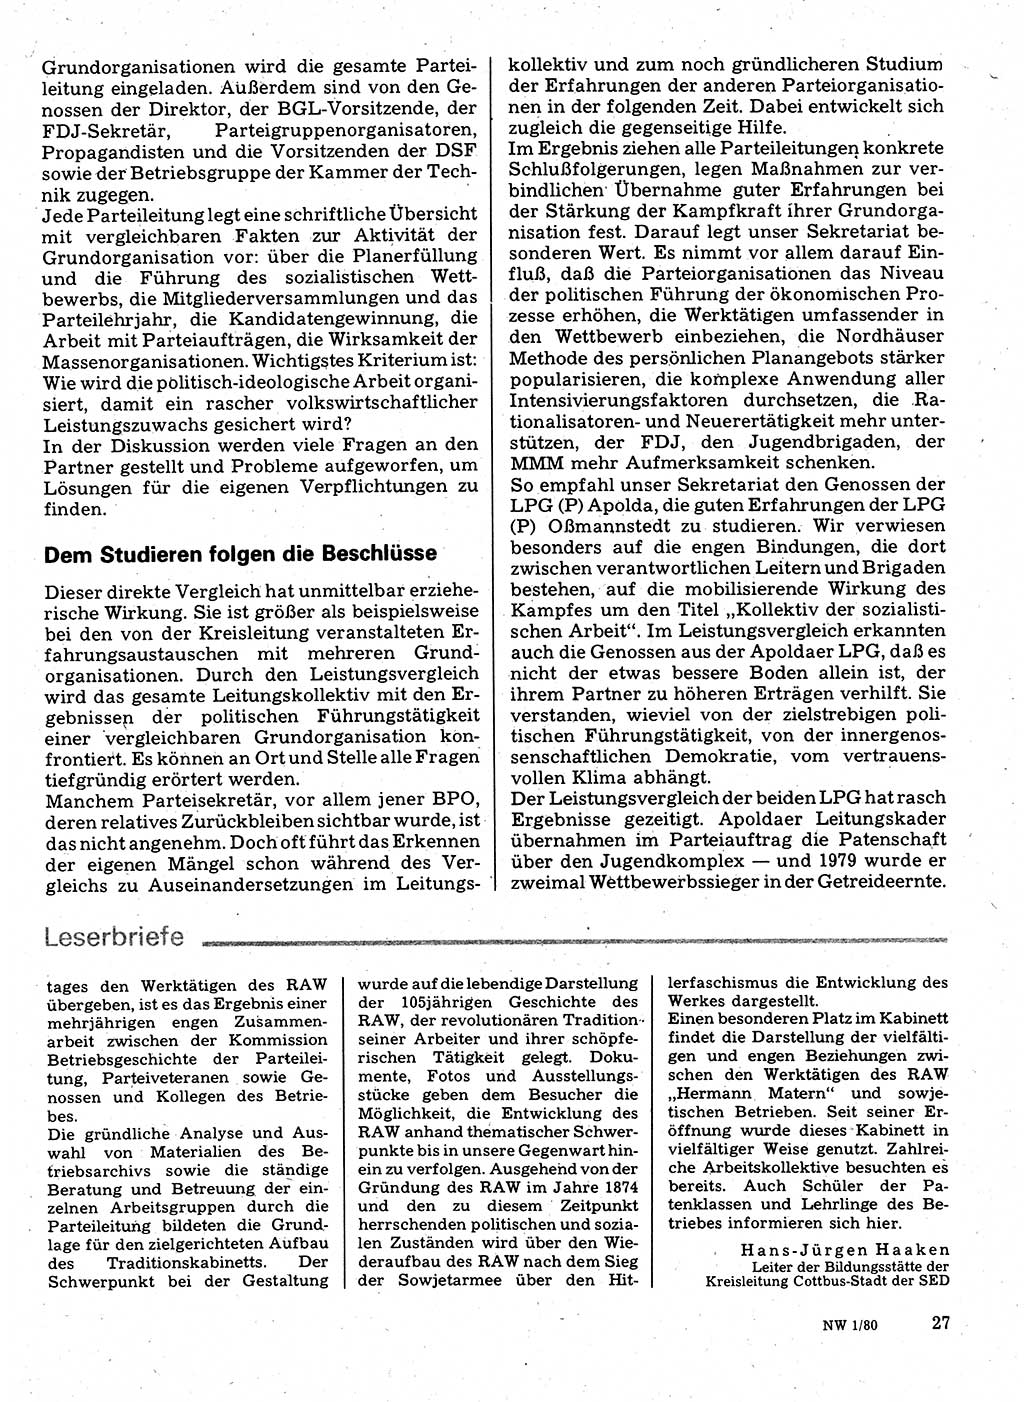 Neuer Weg (NW), Organ des Zentralkomitees (ZK) der SED (Sozialistische Einheitspartei Deutschlands) für Fragen des Parteilebens, 35. Jahrgang [Deutsche Demokratische Republik (DDR)] 1980, Seite 27 (NW ZK SED DDR 1980, S. 27)